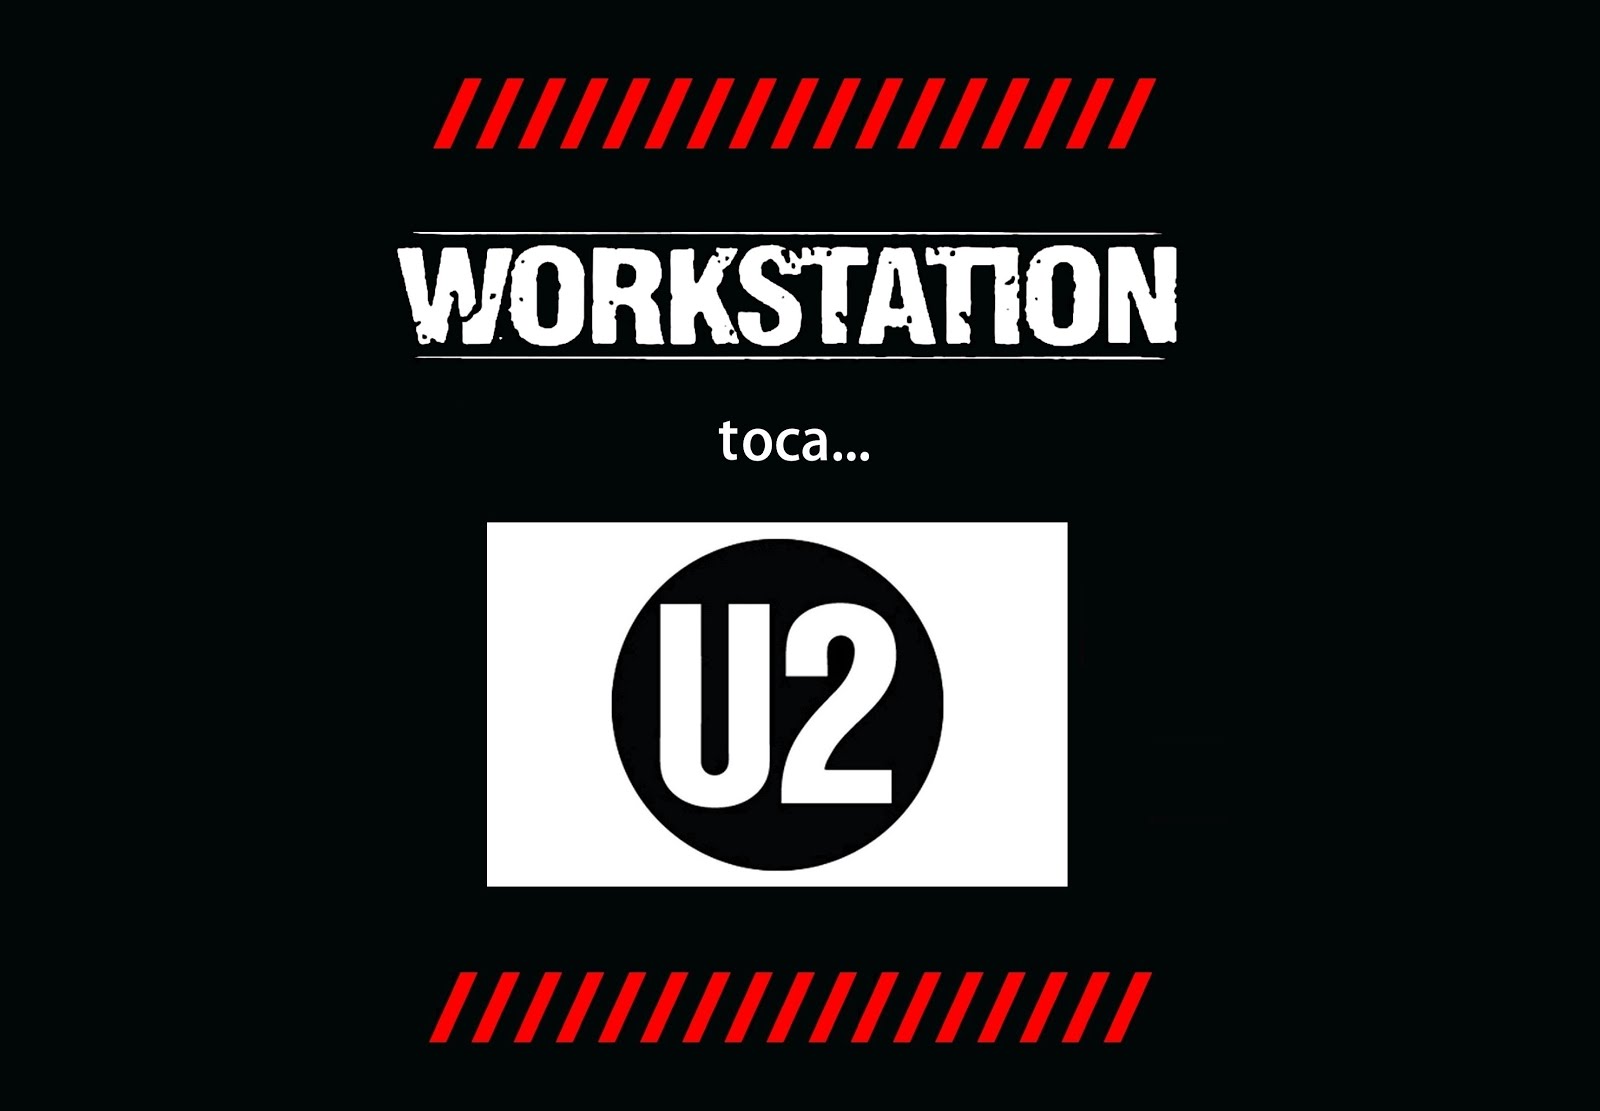 WORKSTATION - SUNDAY BLOODY SUNDAY (U2)